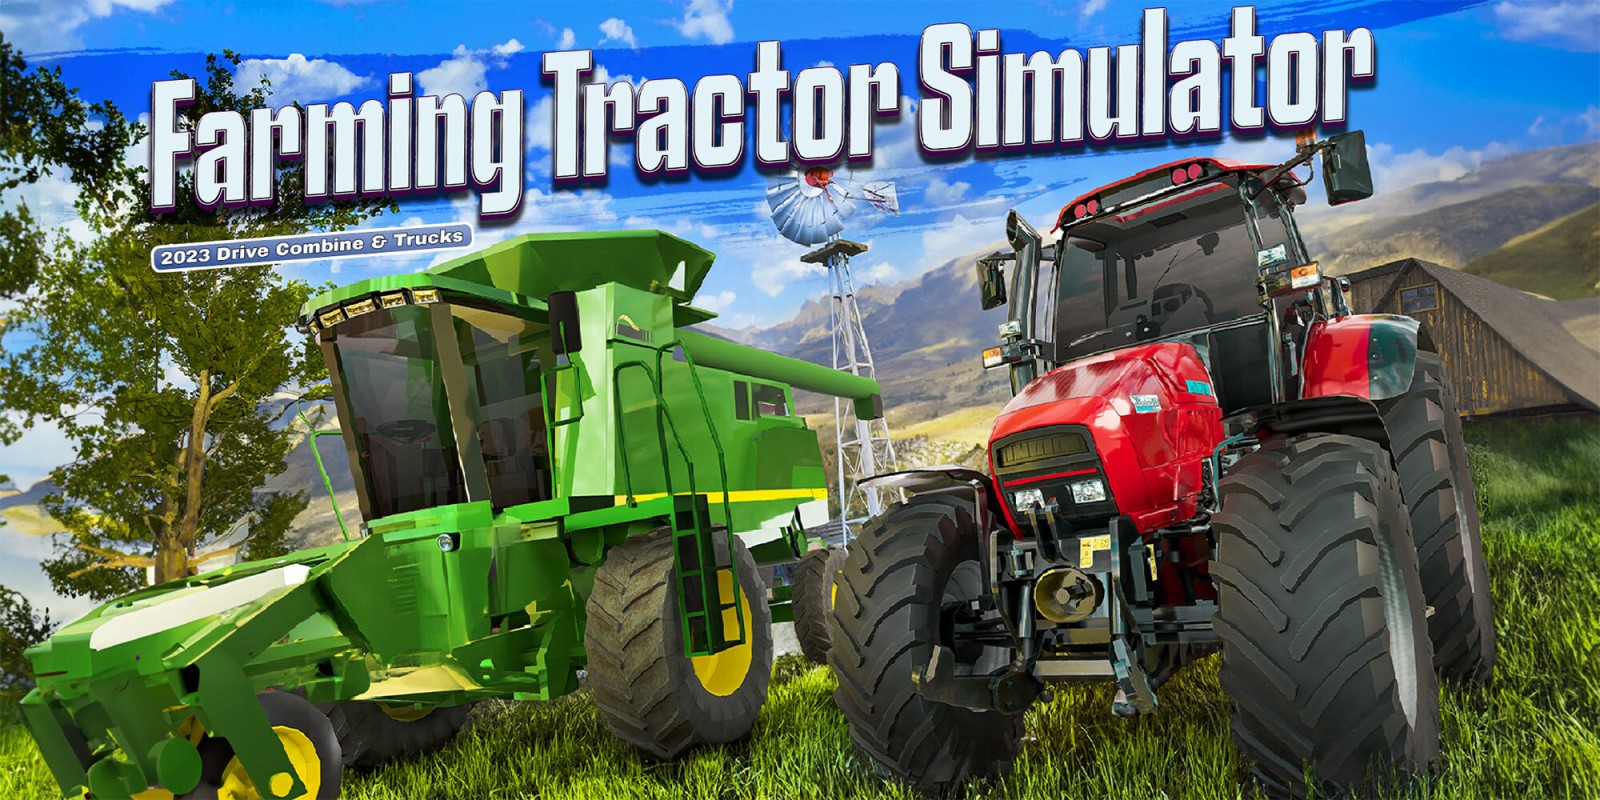 Download do jogo Tractor Farming Simulator